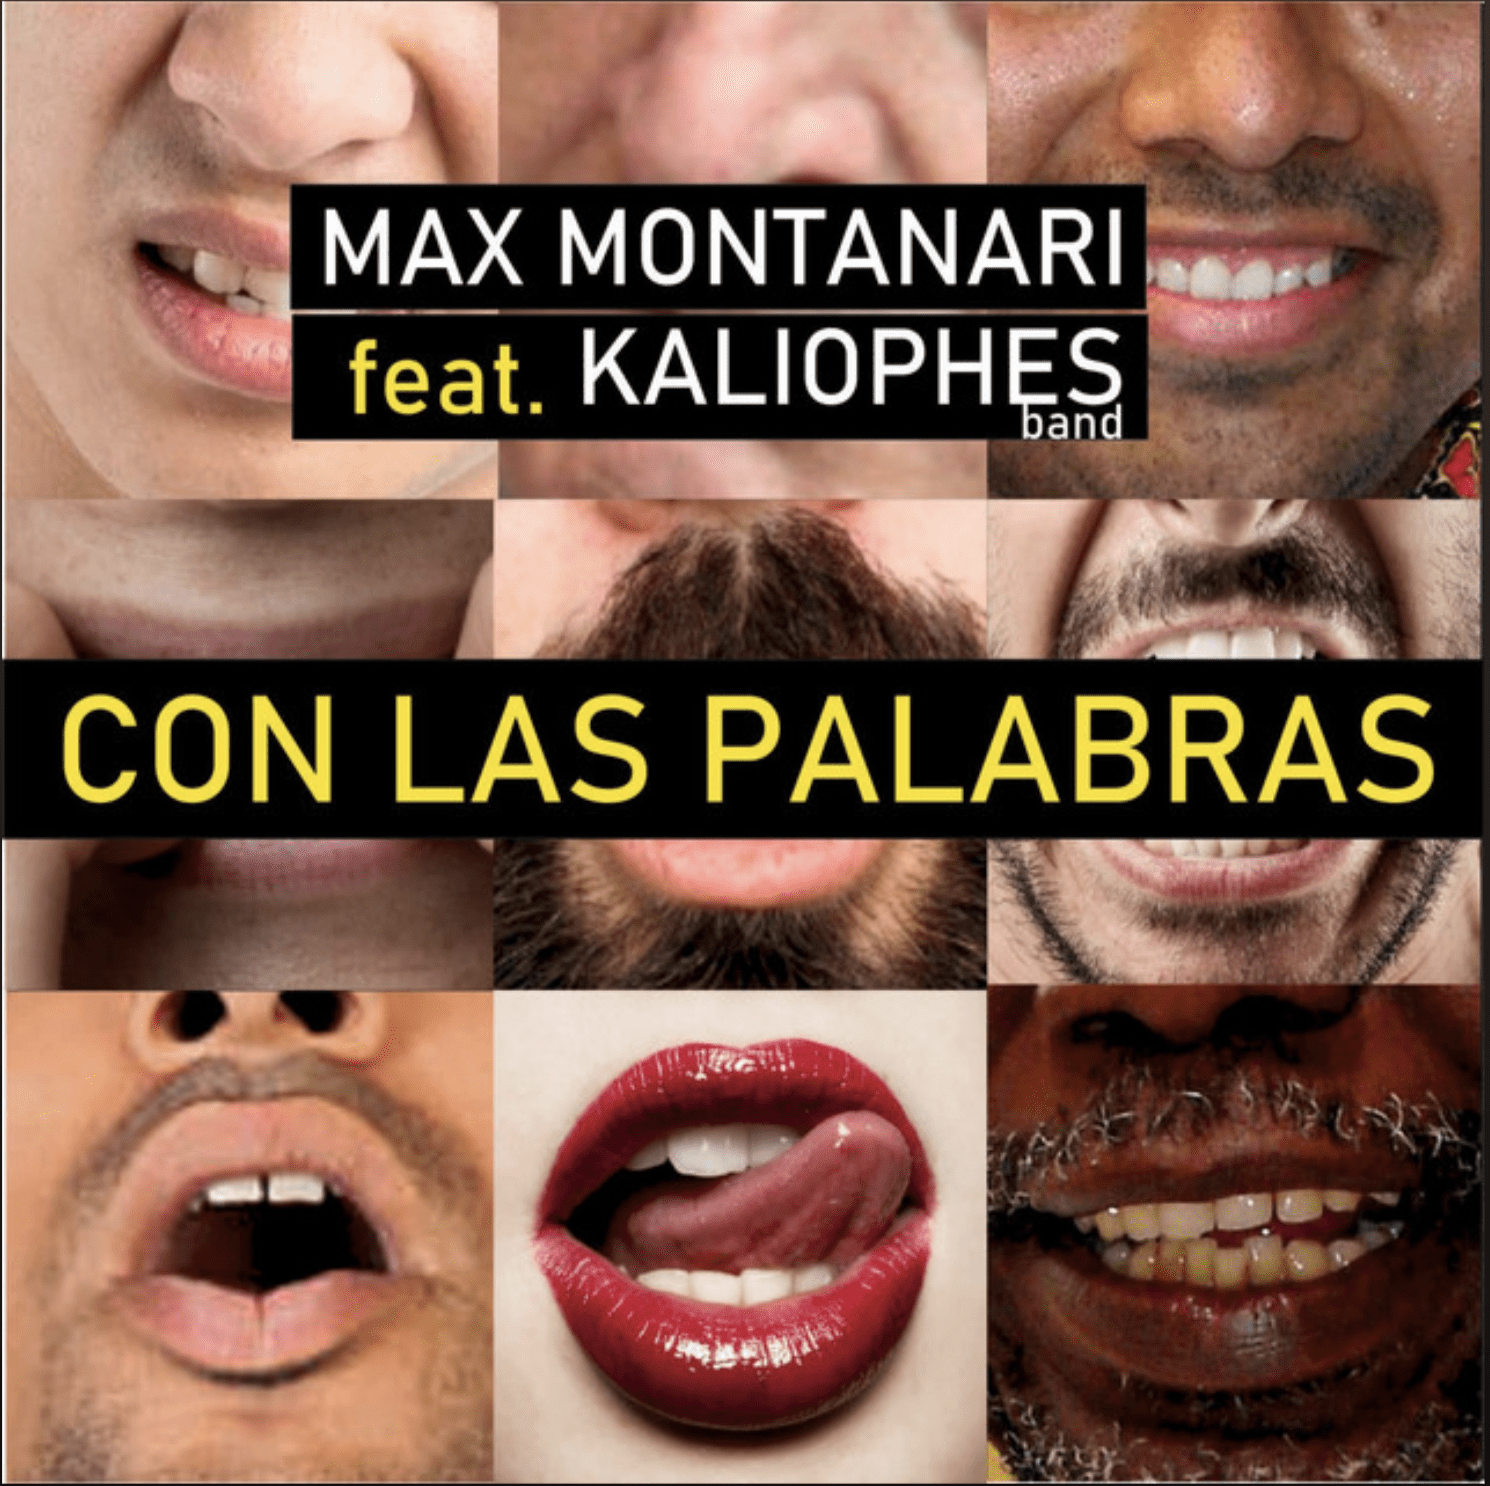 Con las palabras (Original Single) by Max Montanari